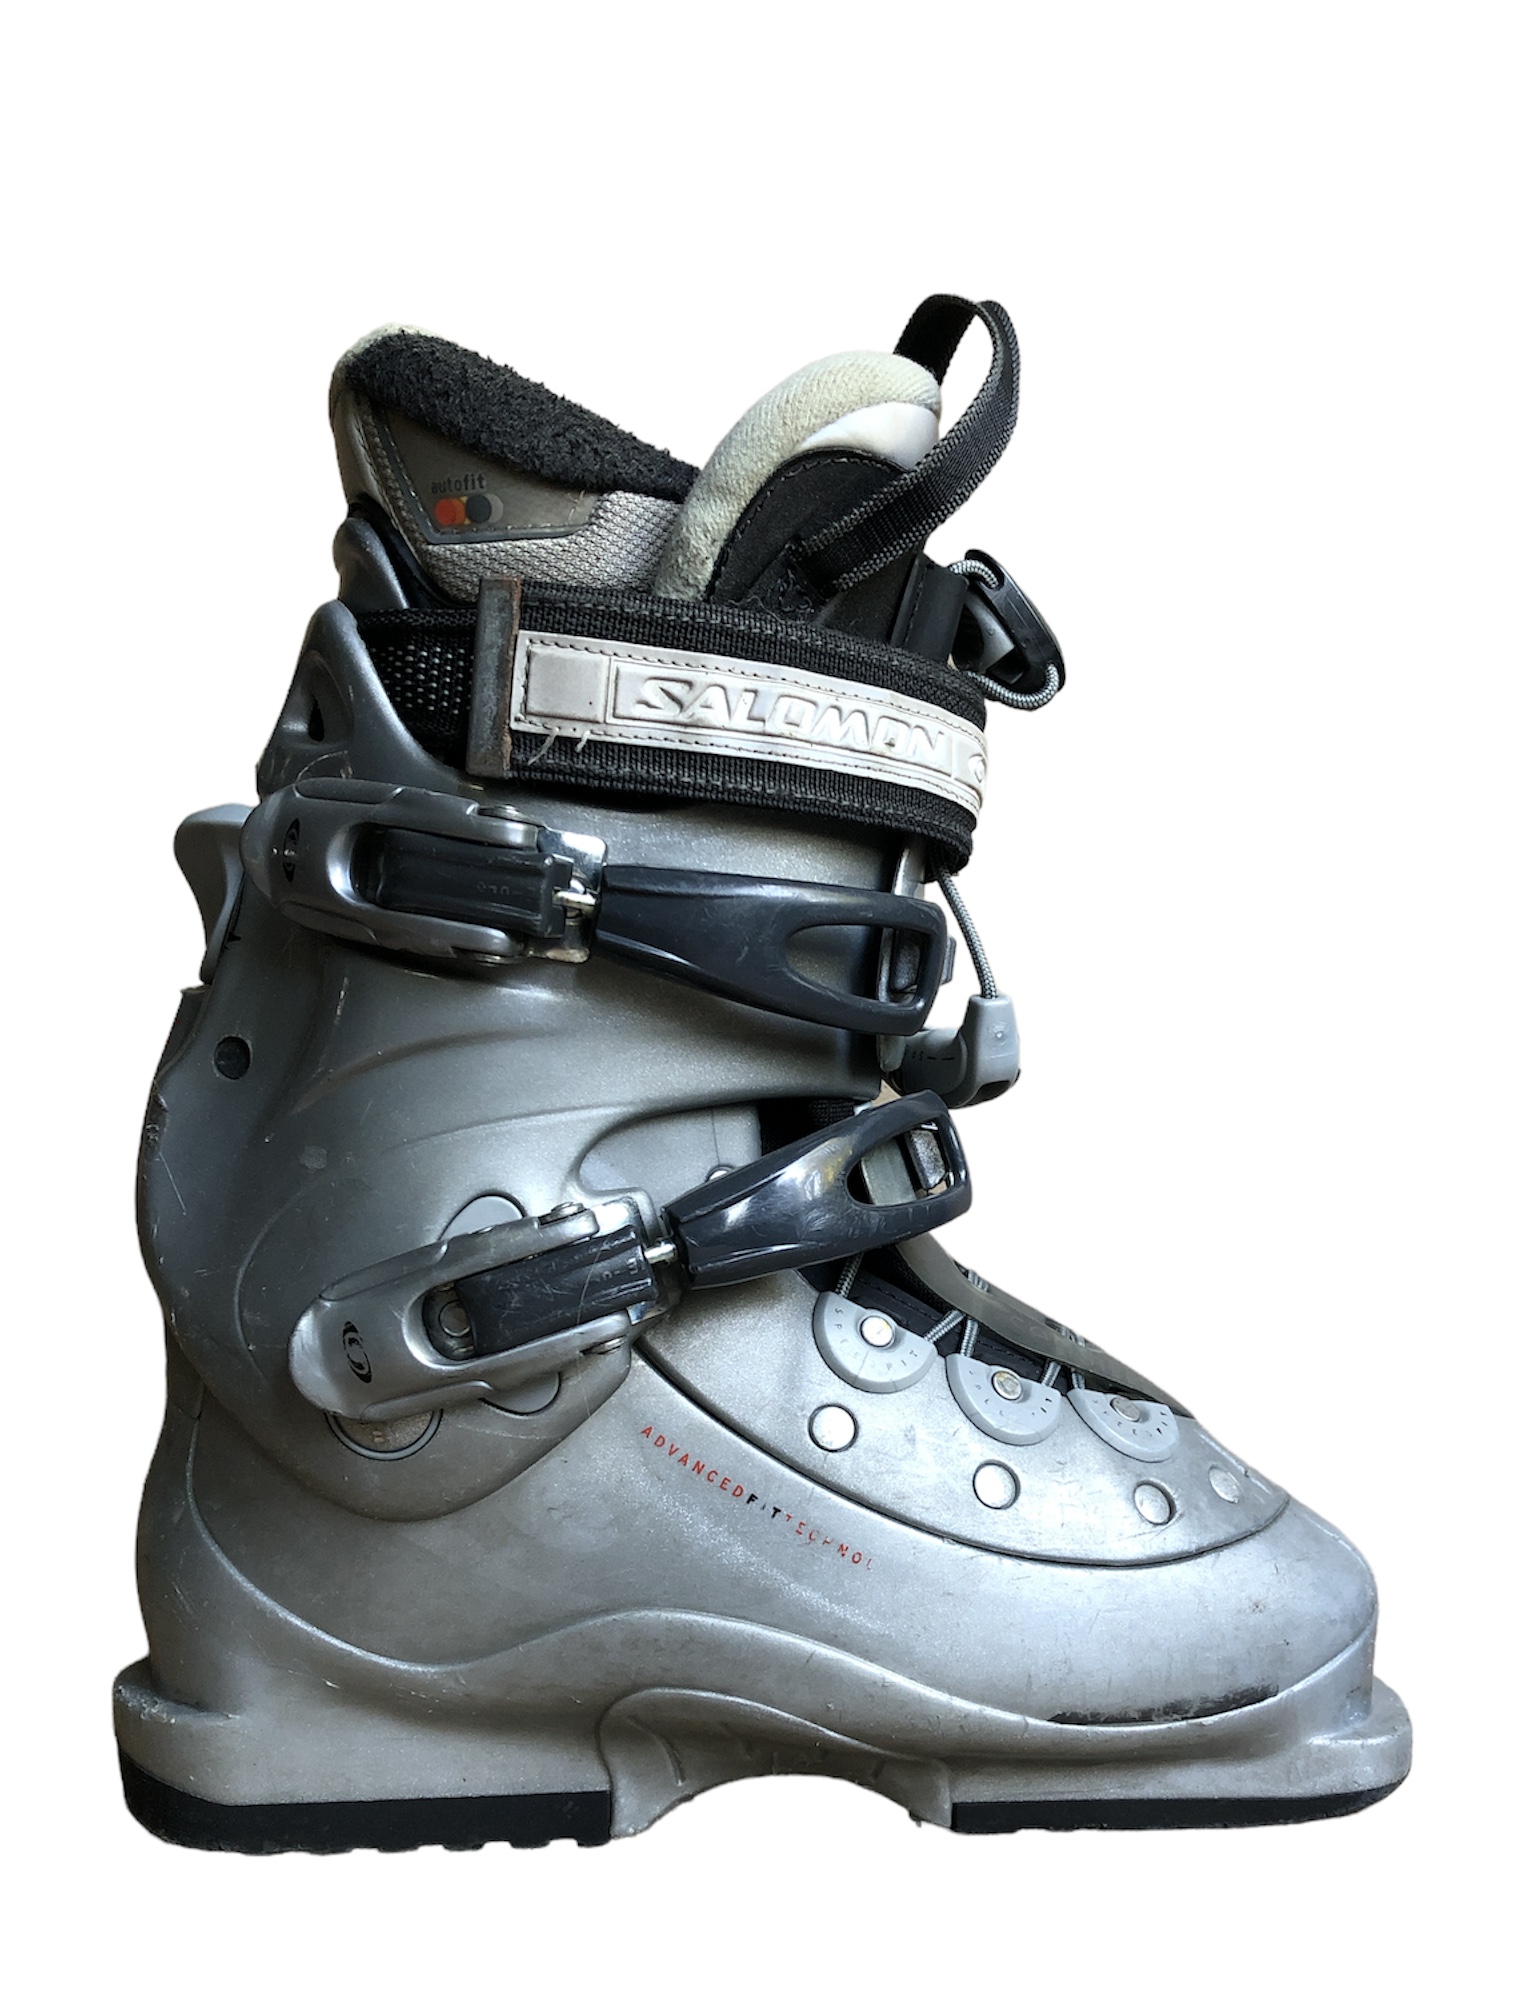 Używane buty narciarskie SALOMON 23,5 / 278mm rozmiar 36 :: Sklep Sportowy  - outlet sportowy, koncówki kolekcji, wyprzedaże, narty, deski, wiązania,  sprzet narciarski, buty sportowe